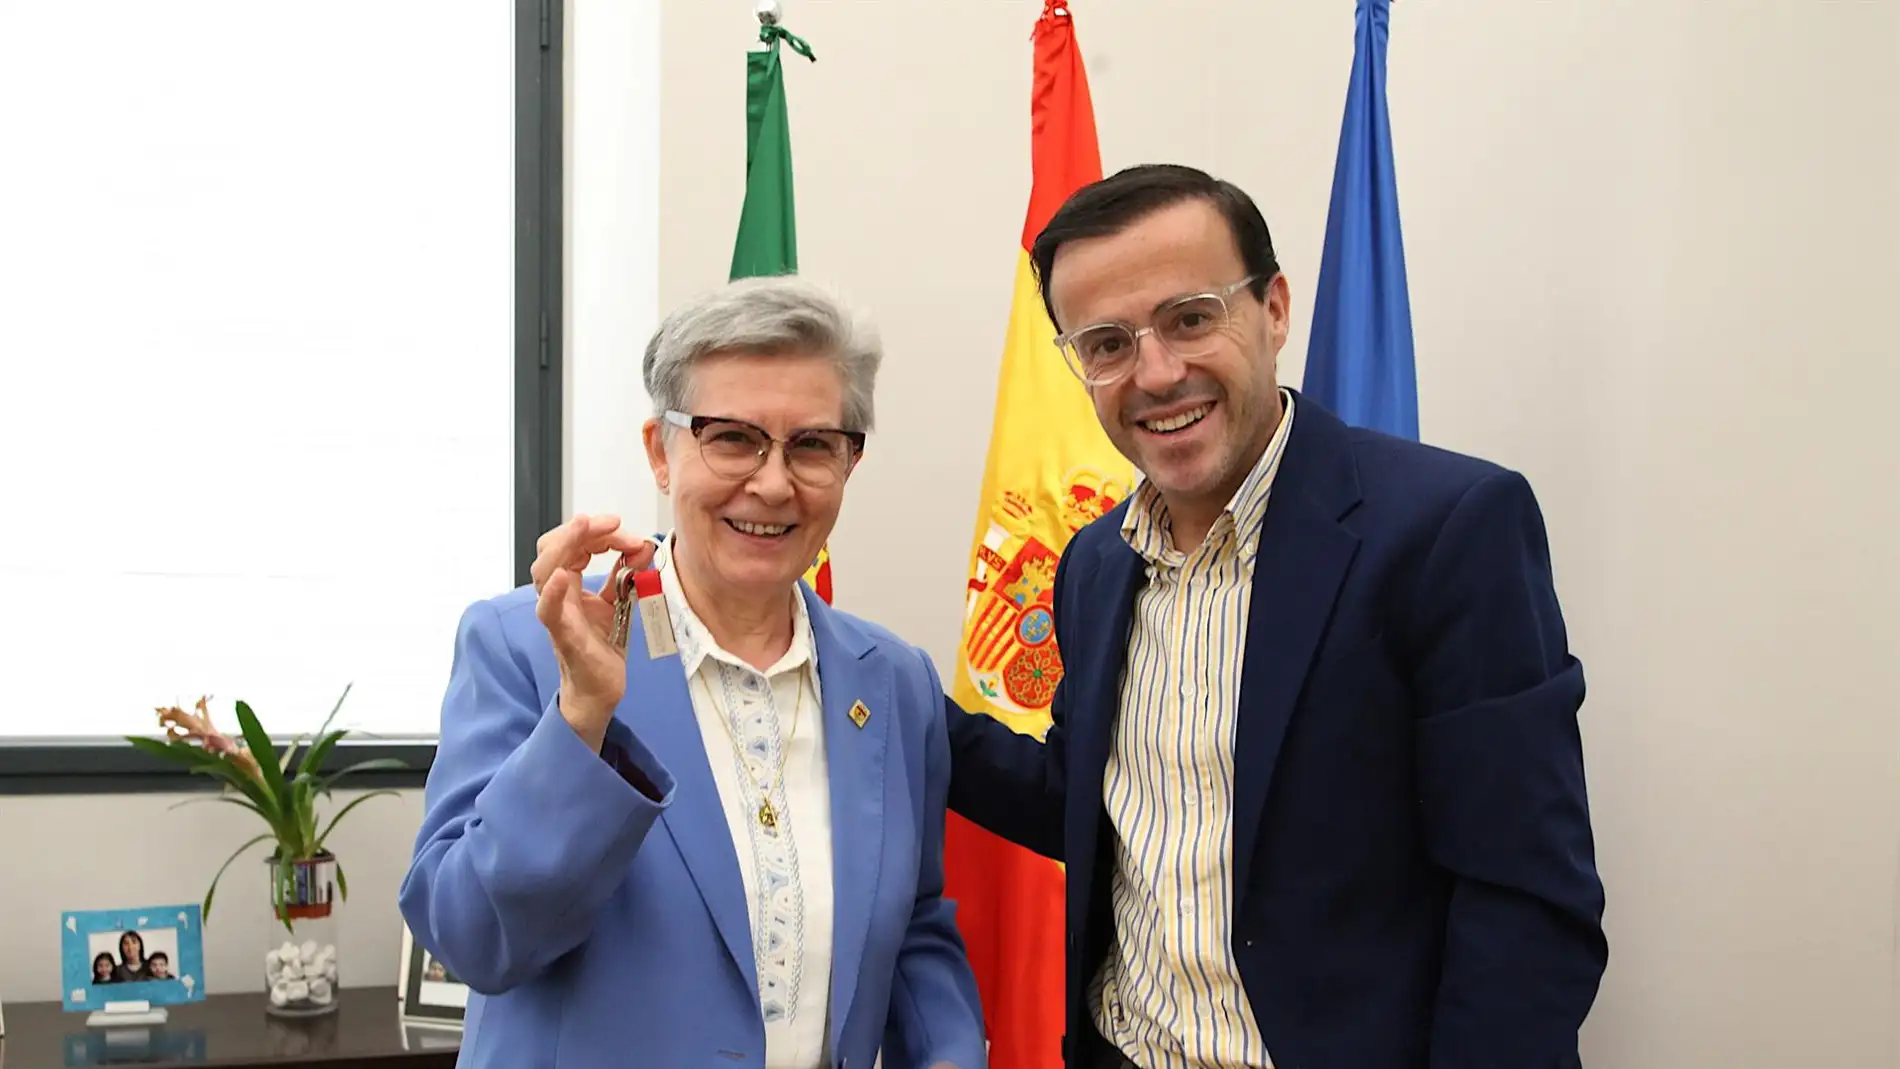 Miguel Ángel Gallardo, presidente de la Diputación de Badajoz, entrega las llaves de la antigua maternidad de Badajoz a Segunda Sánchez.